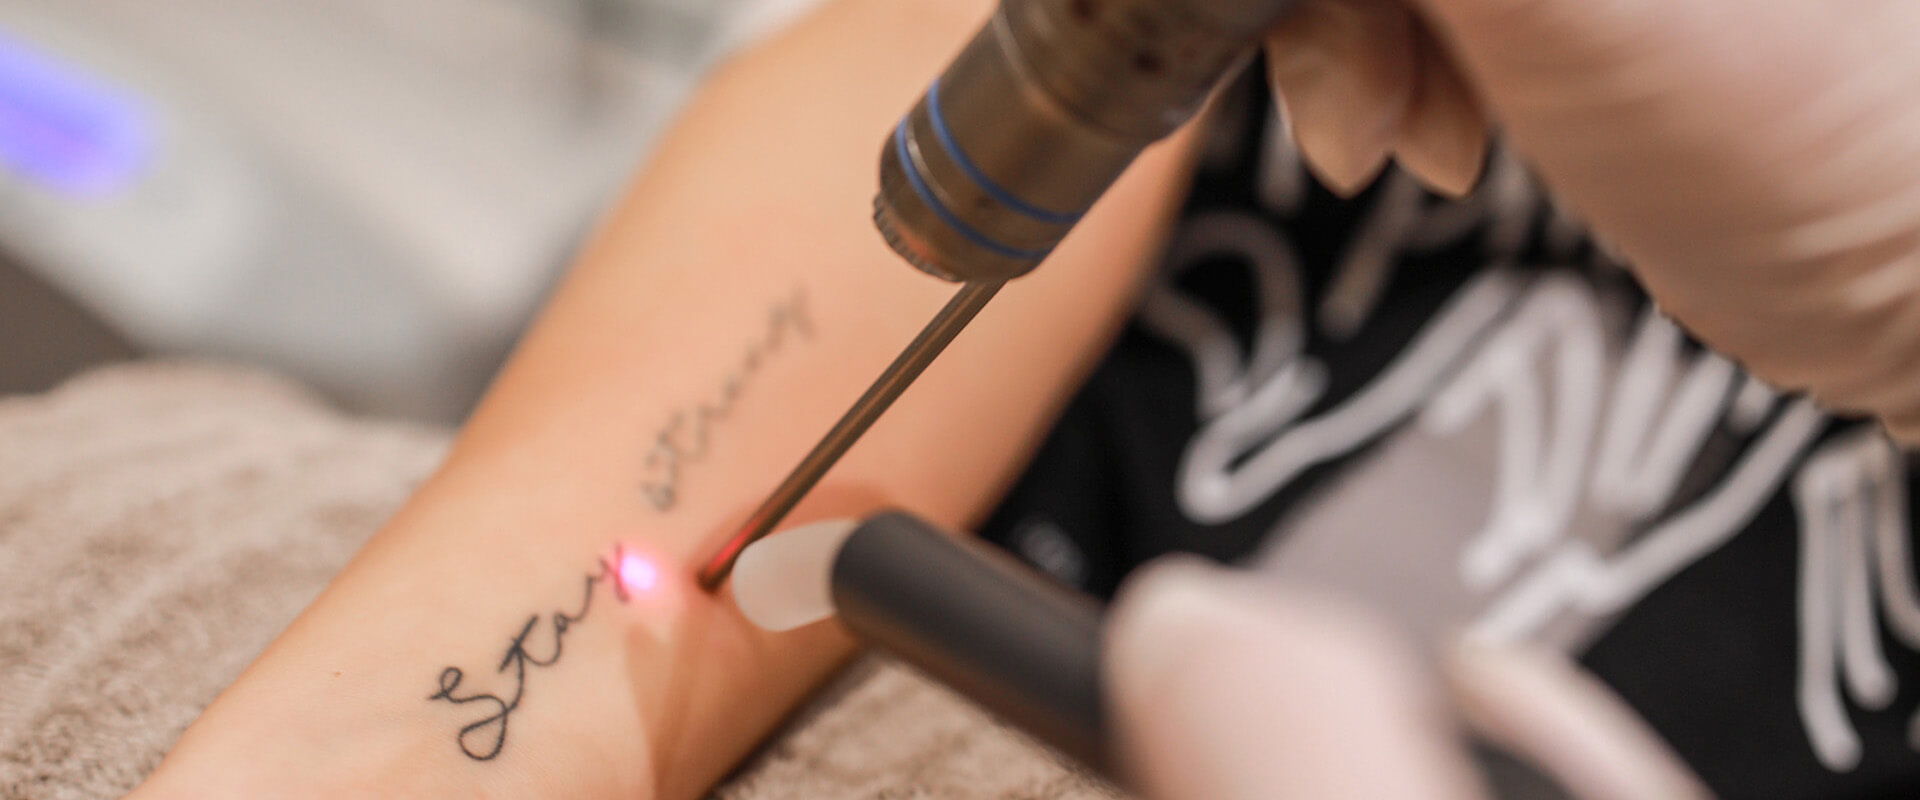 nazorg tattoo verwijderen